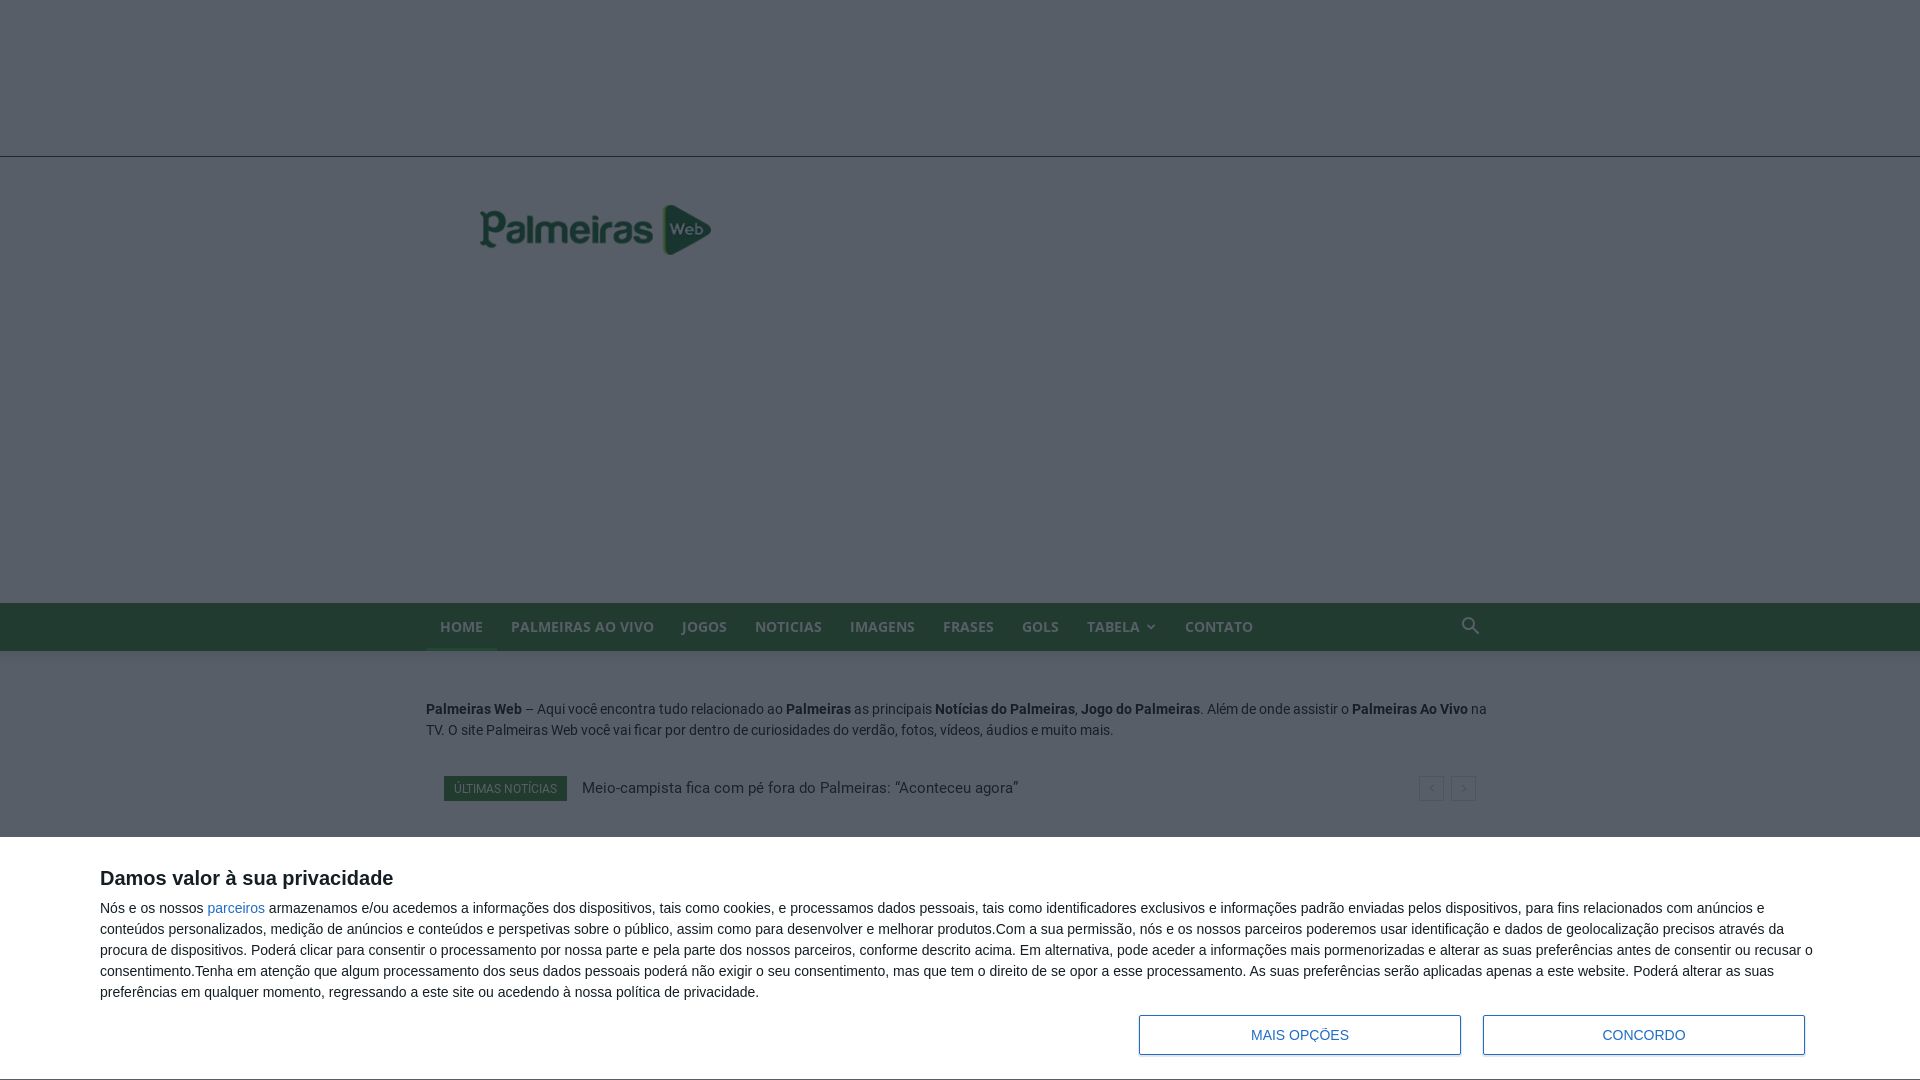 Status do site palmeirasweb.com está   ONLINE